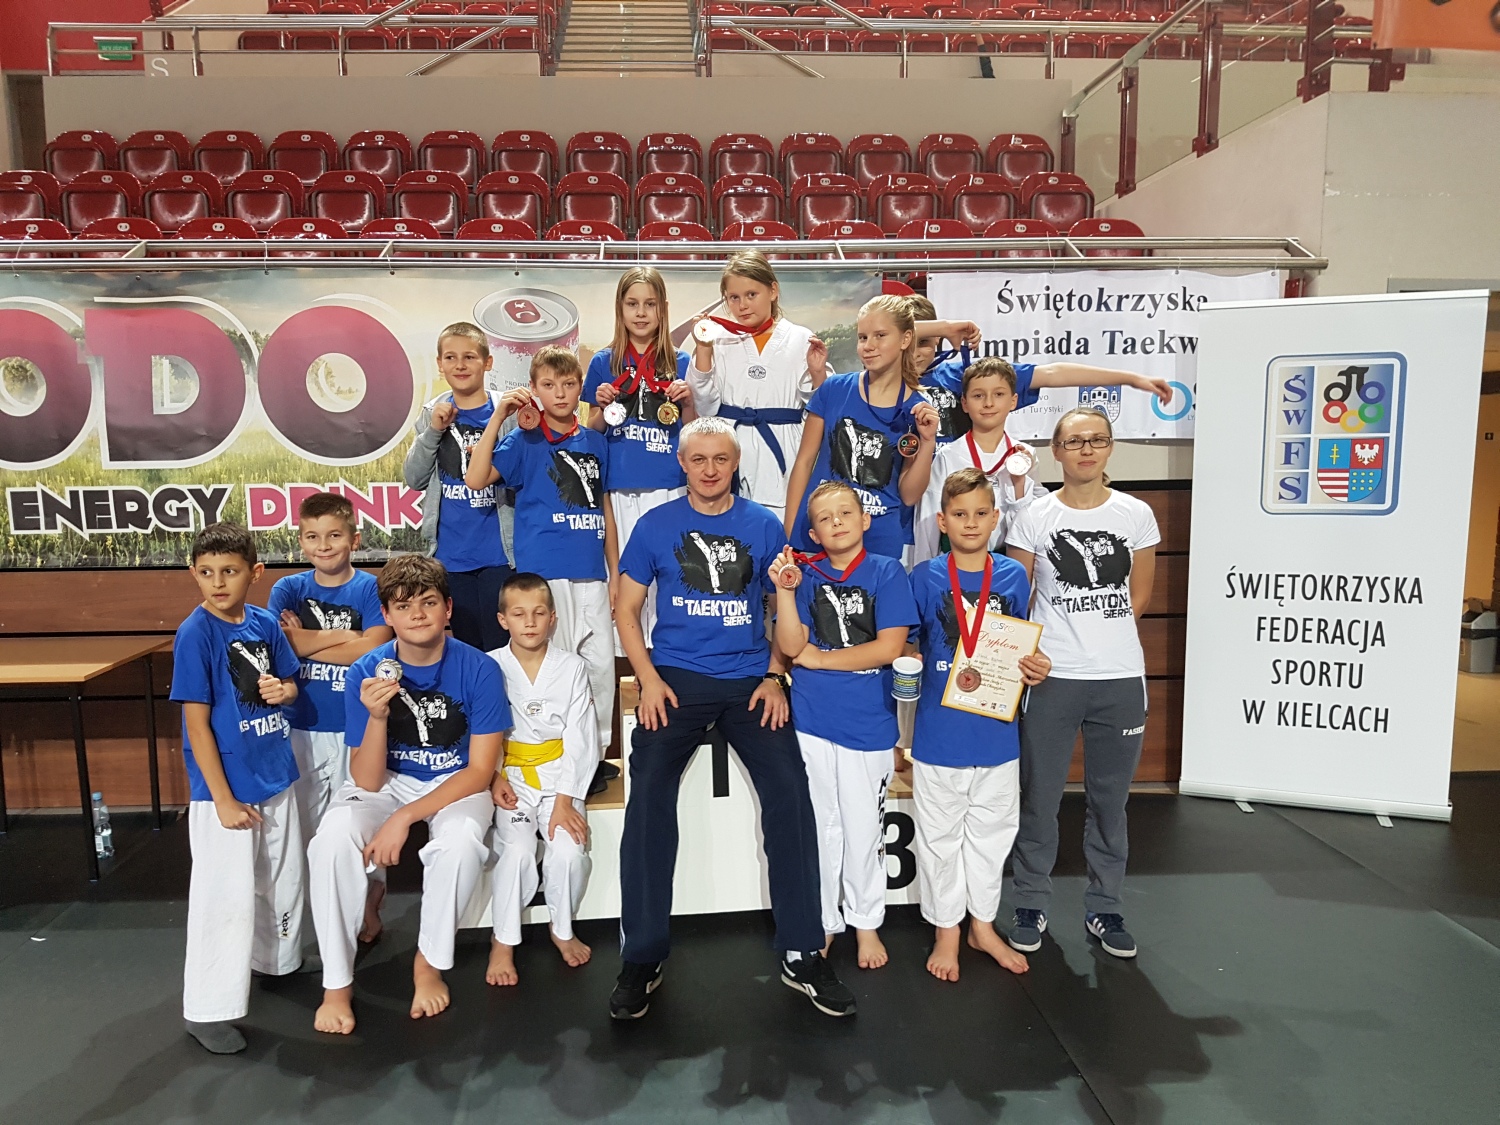 Midzywoje­wdzkie  Mistrzostwa Modzikw w Taekwondo Olimpijskim, 29.10.2016 r.